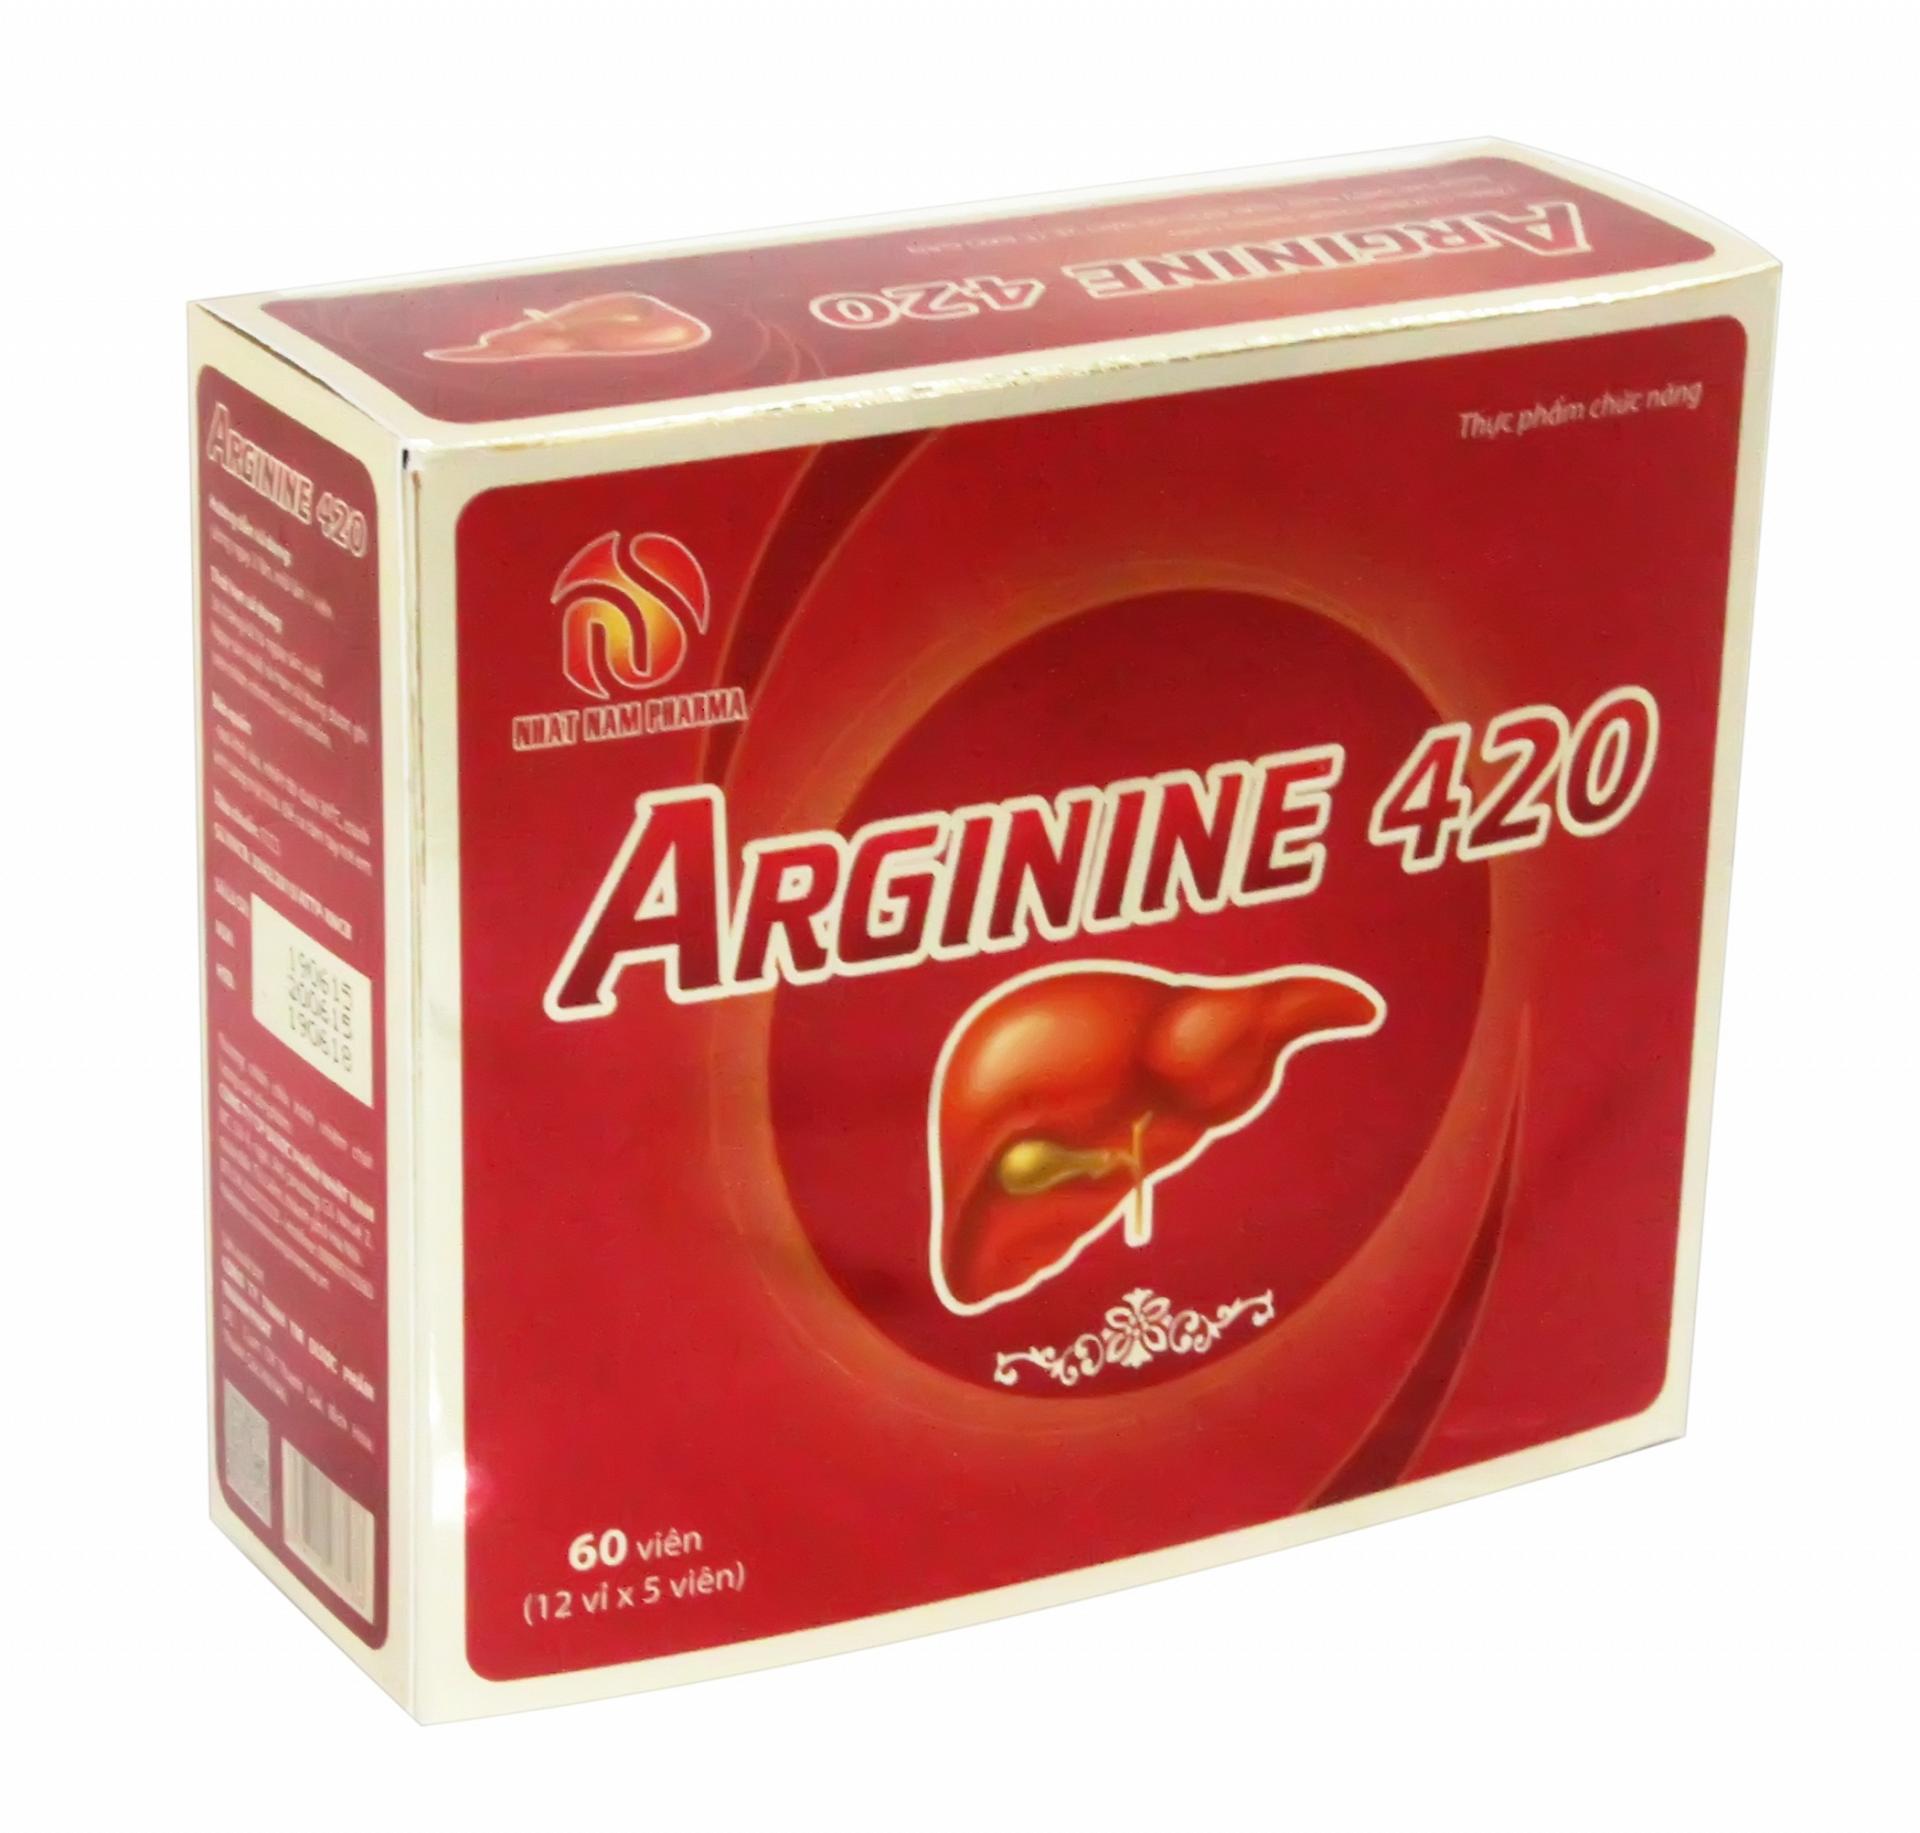 Thuốc arginine là gì là gì? Công dụng và liều dùng tương ứng của thuốc 1